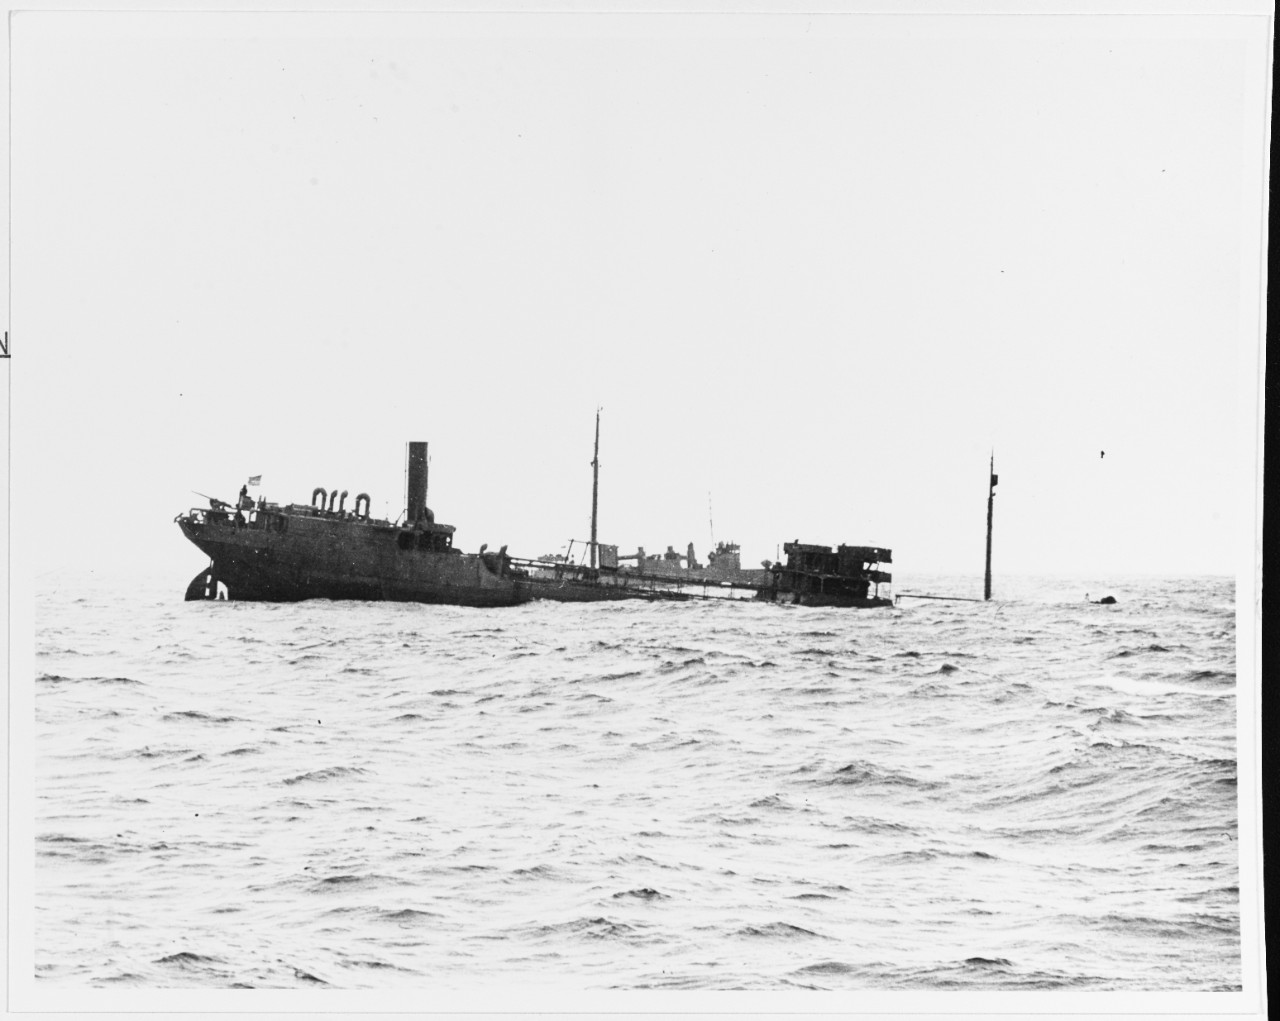 S.S. CAMDEN (U.S. Merchant Tanker, 1921-1942)